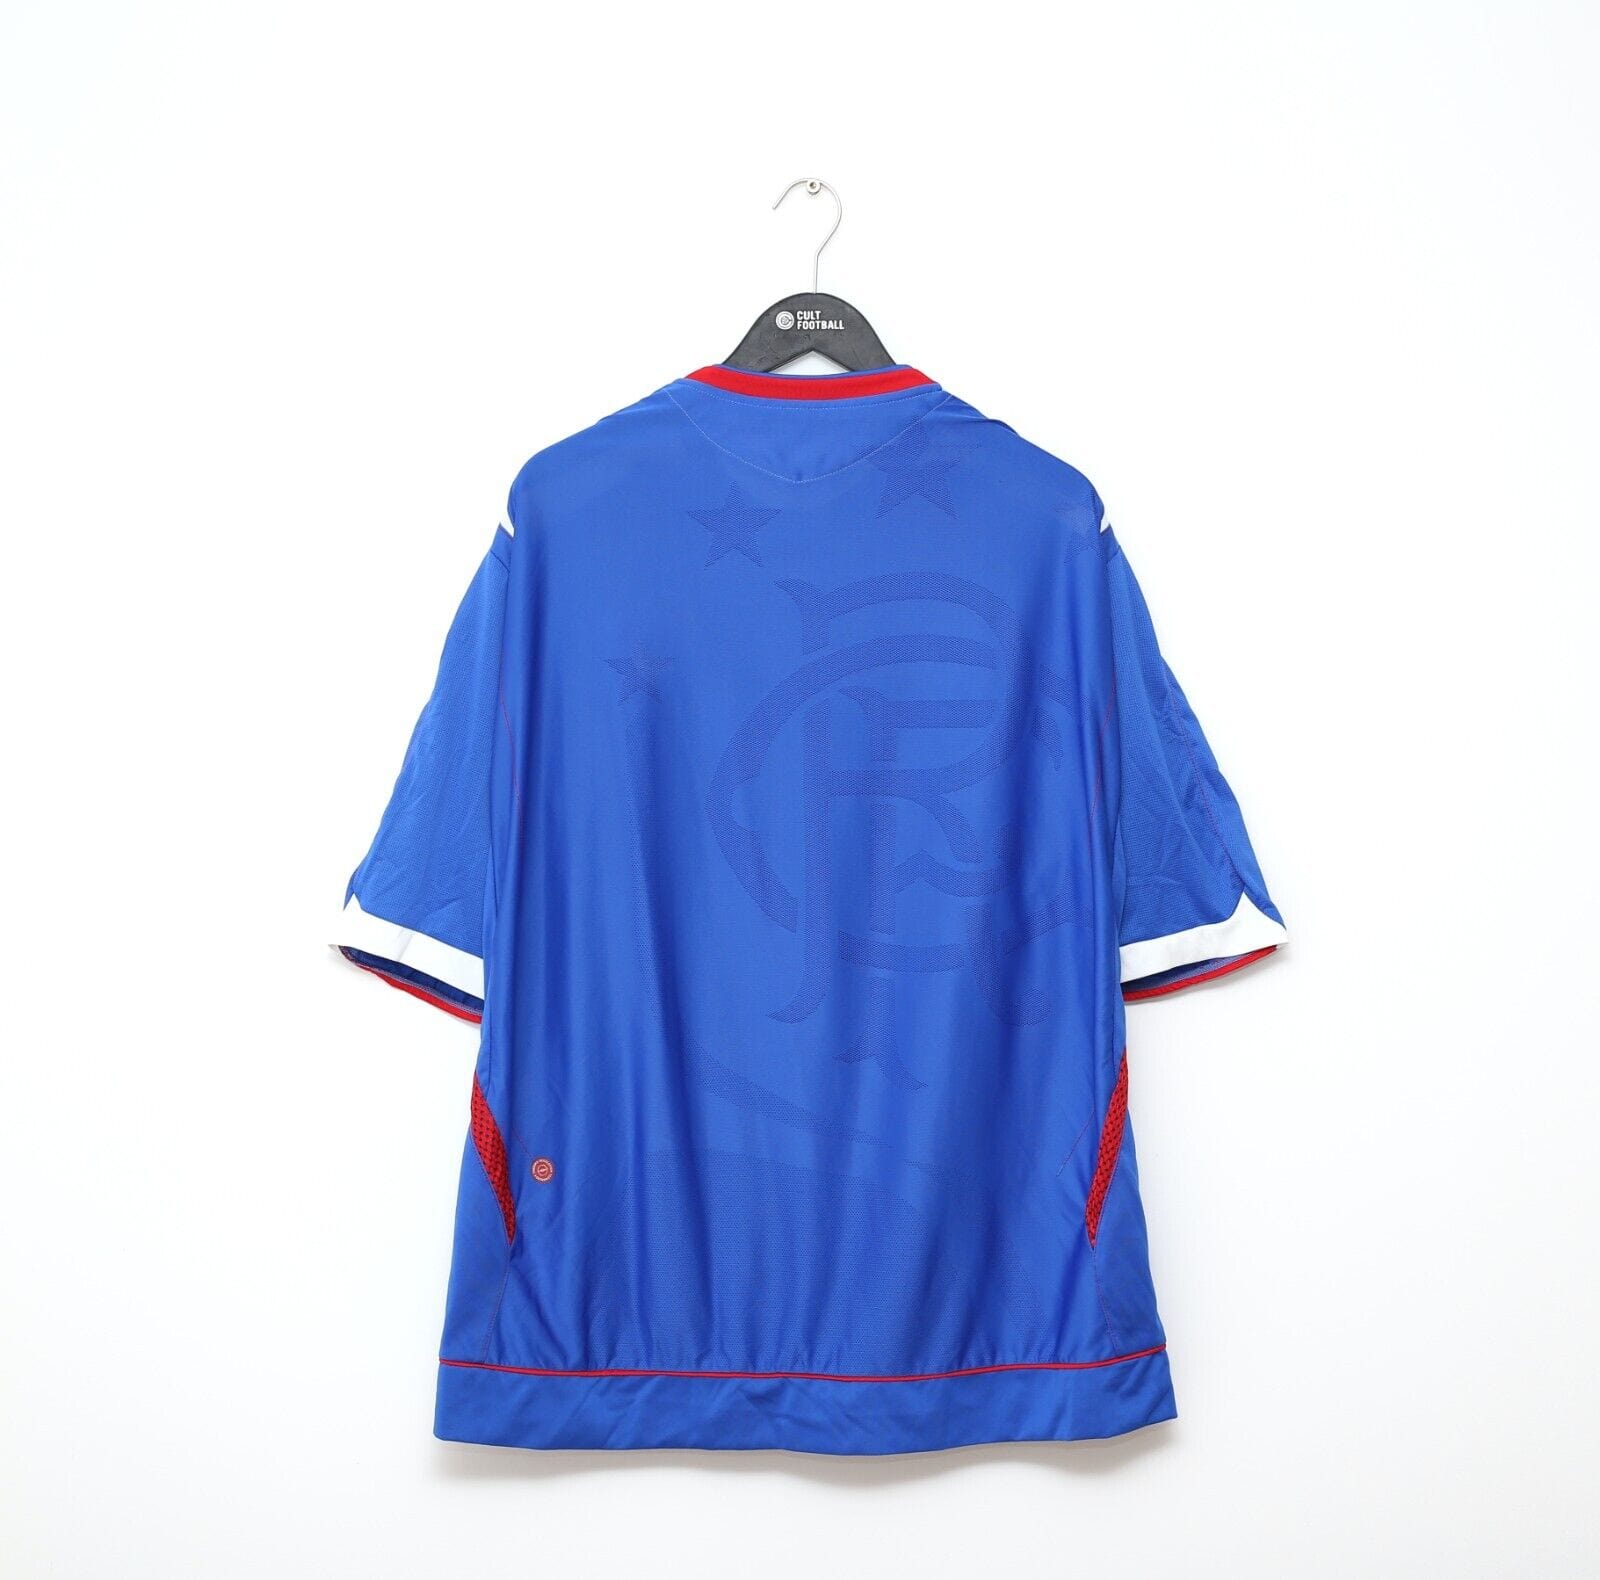 2006/07 RANGERS Vintage Umbro Home Football Shirt (3XL/4XL)